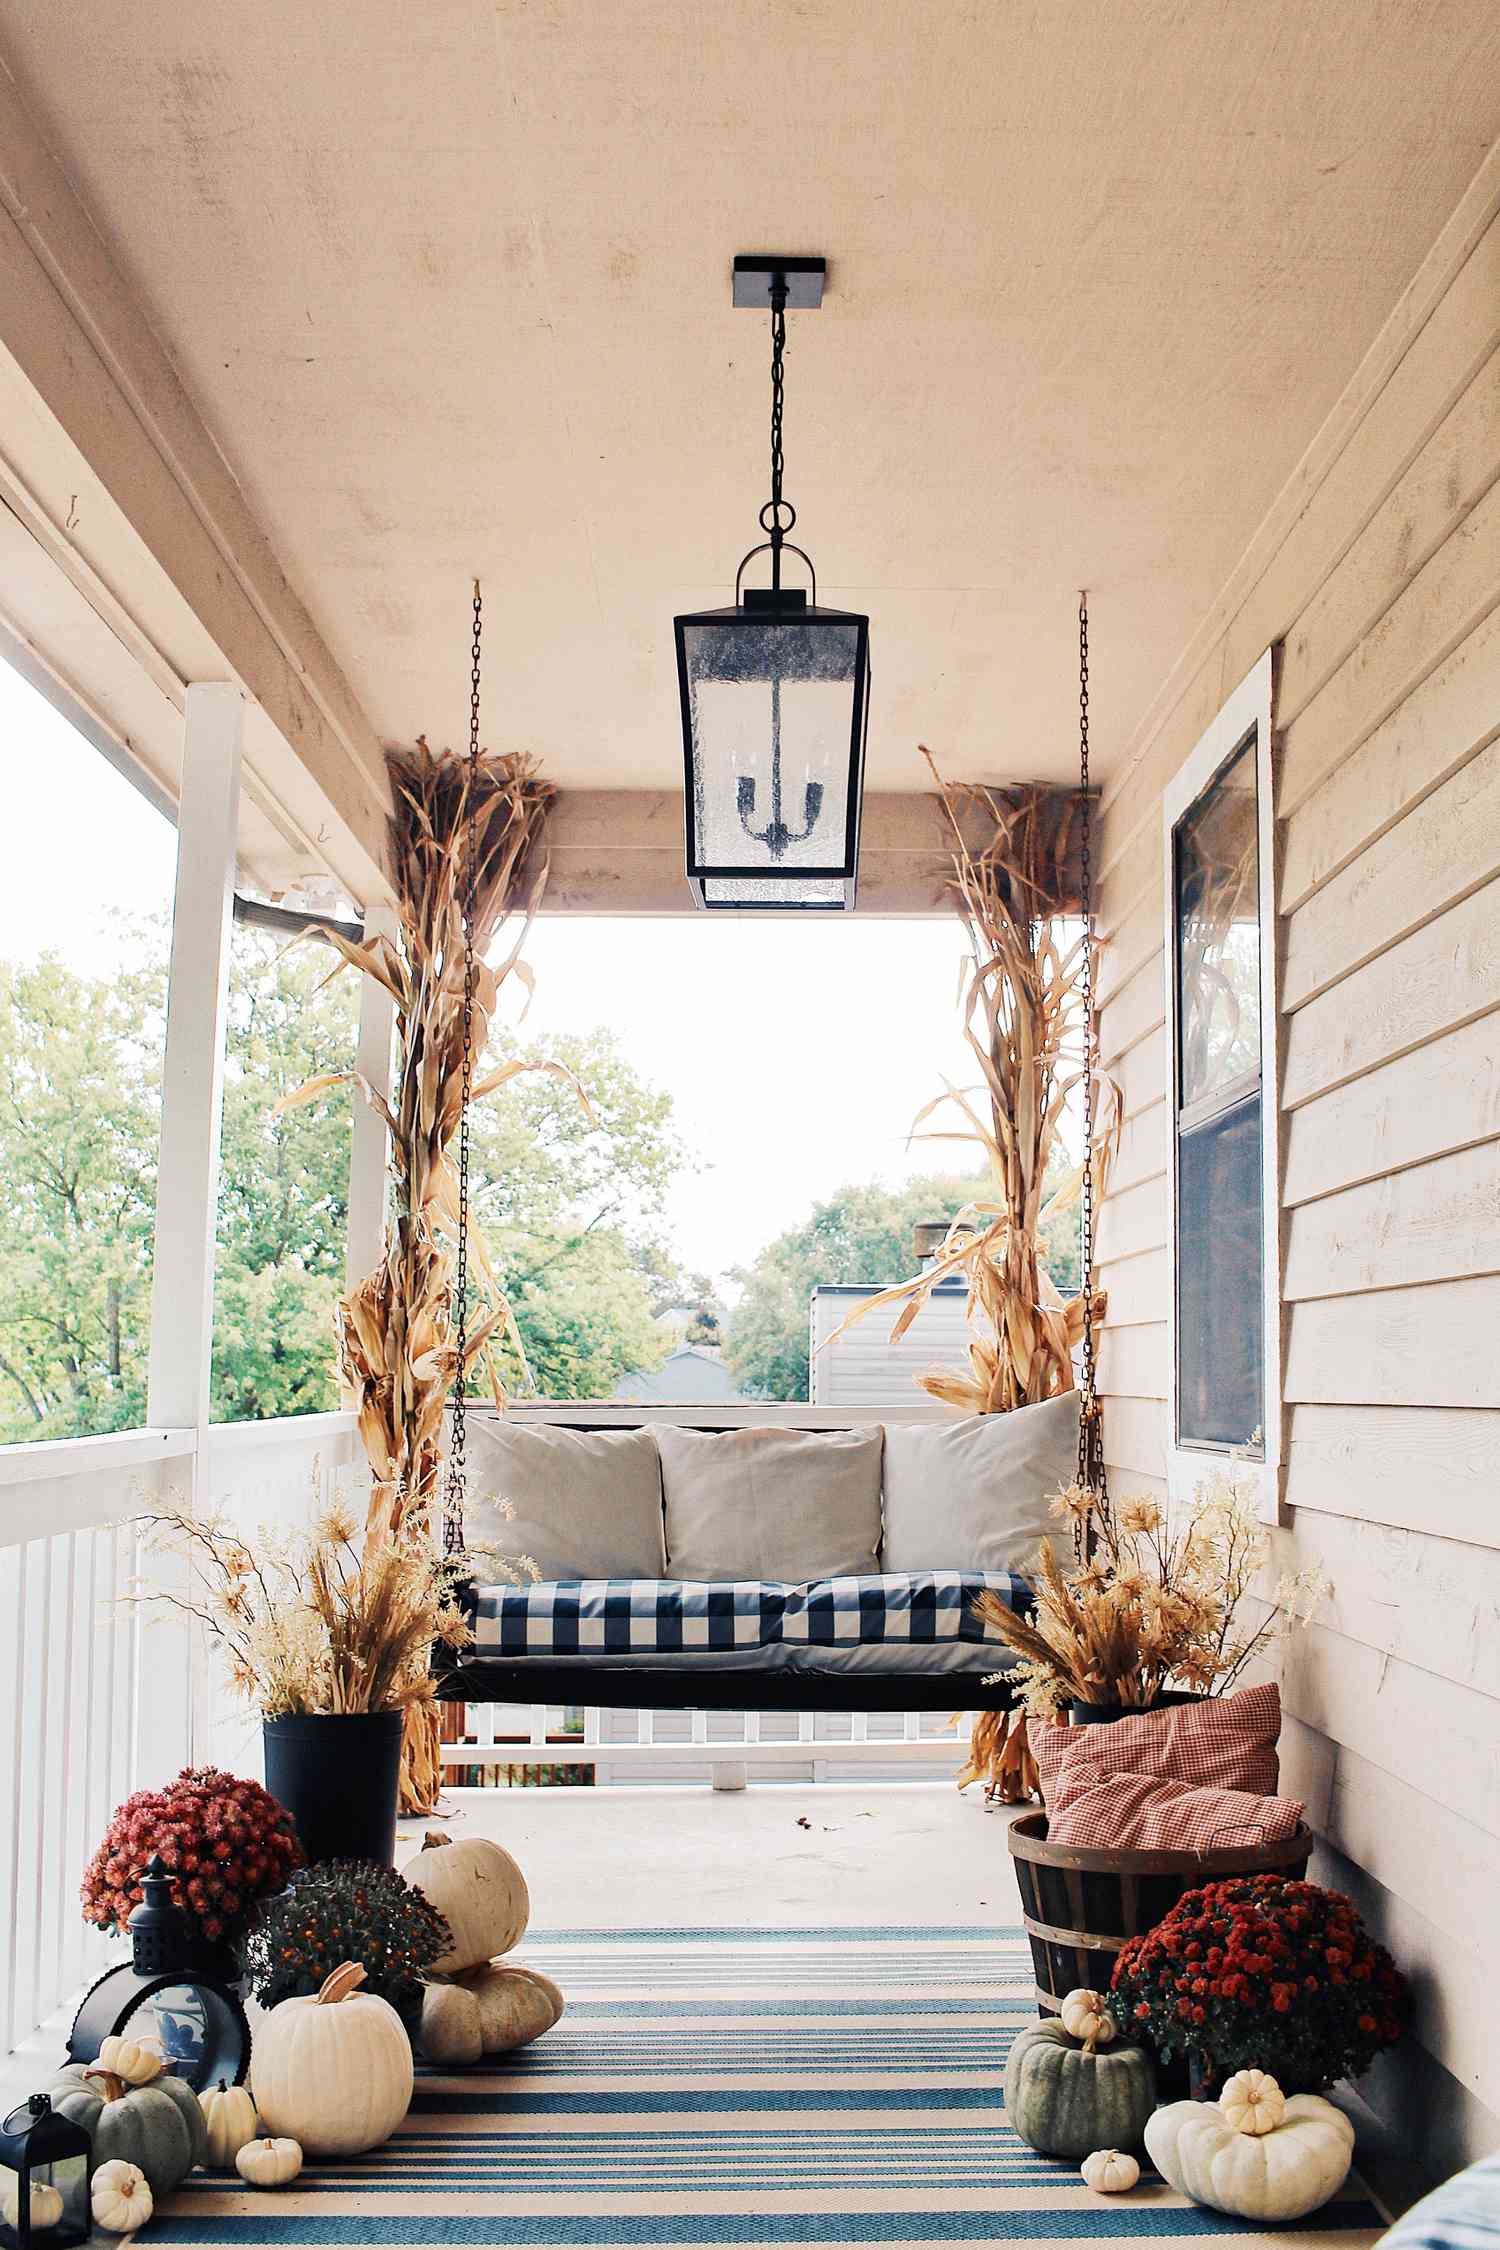 Balanço de varanda cercado por decoração de outono